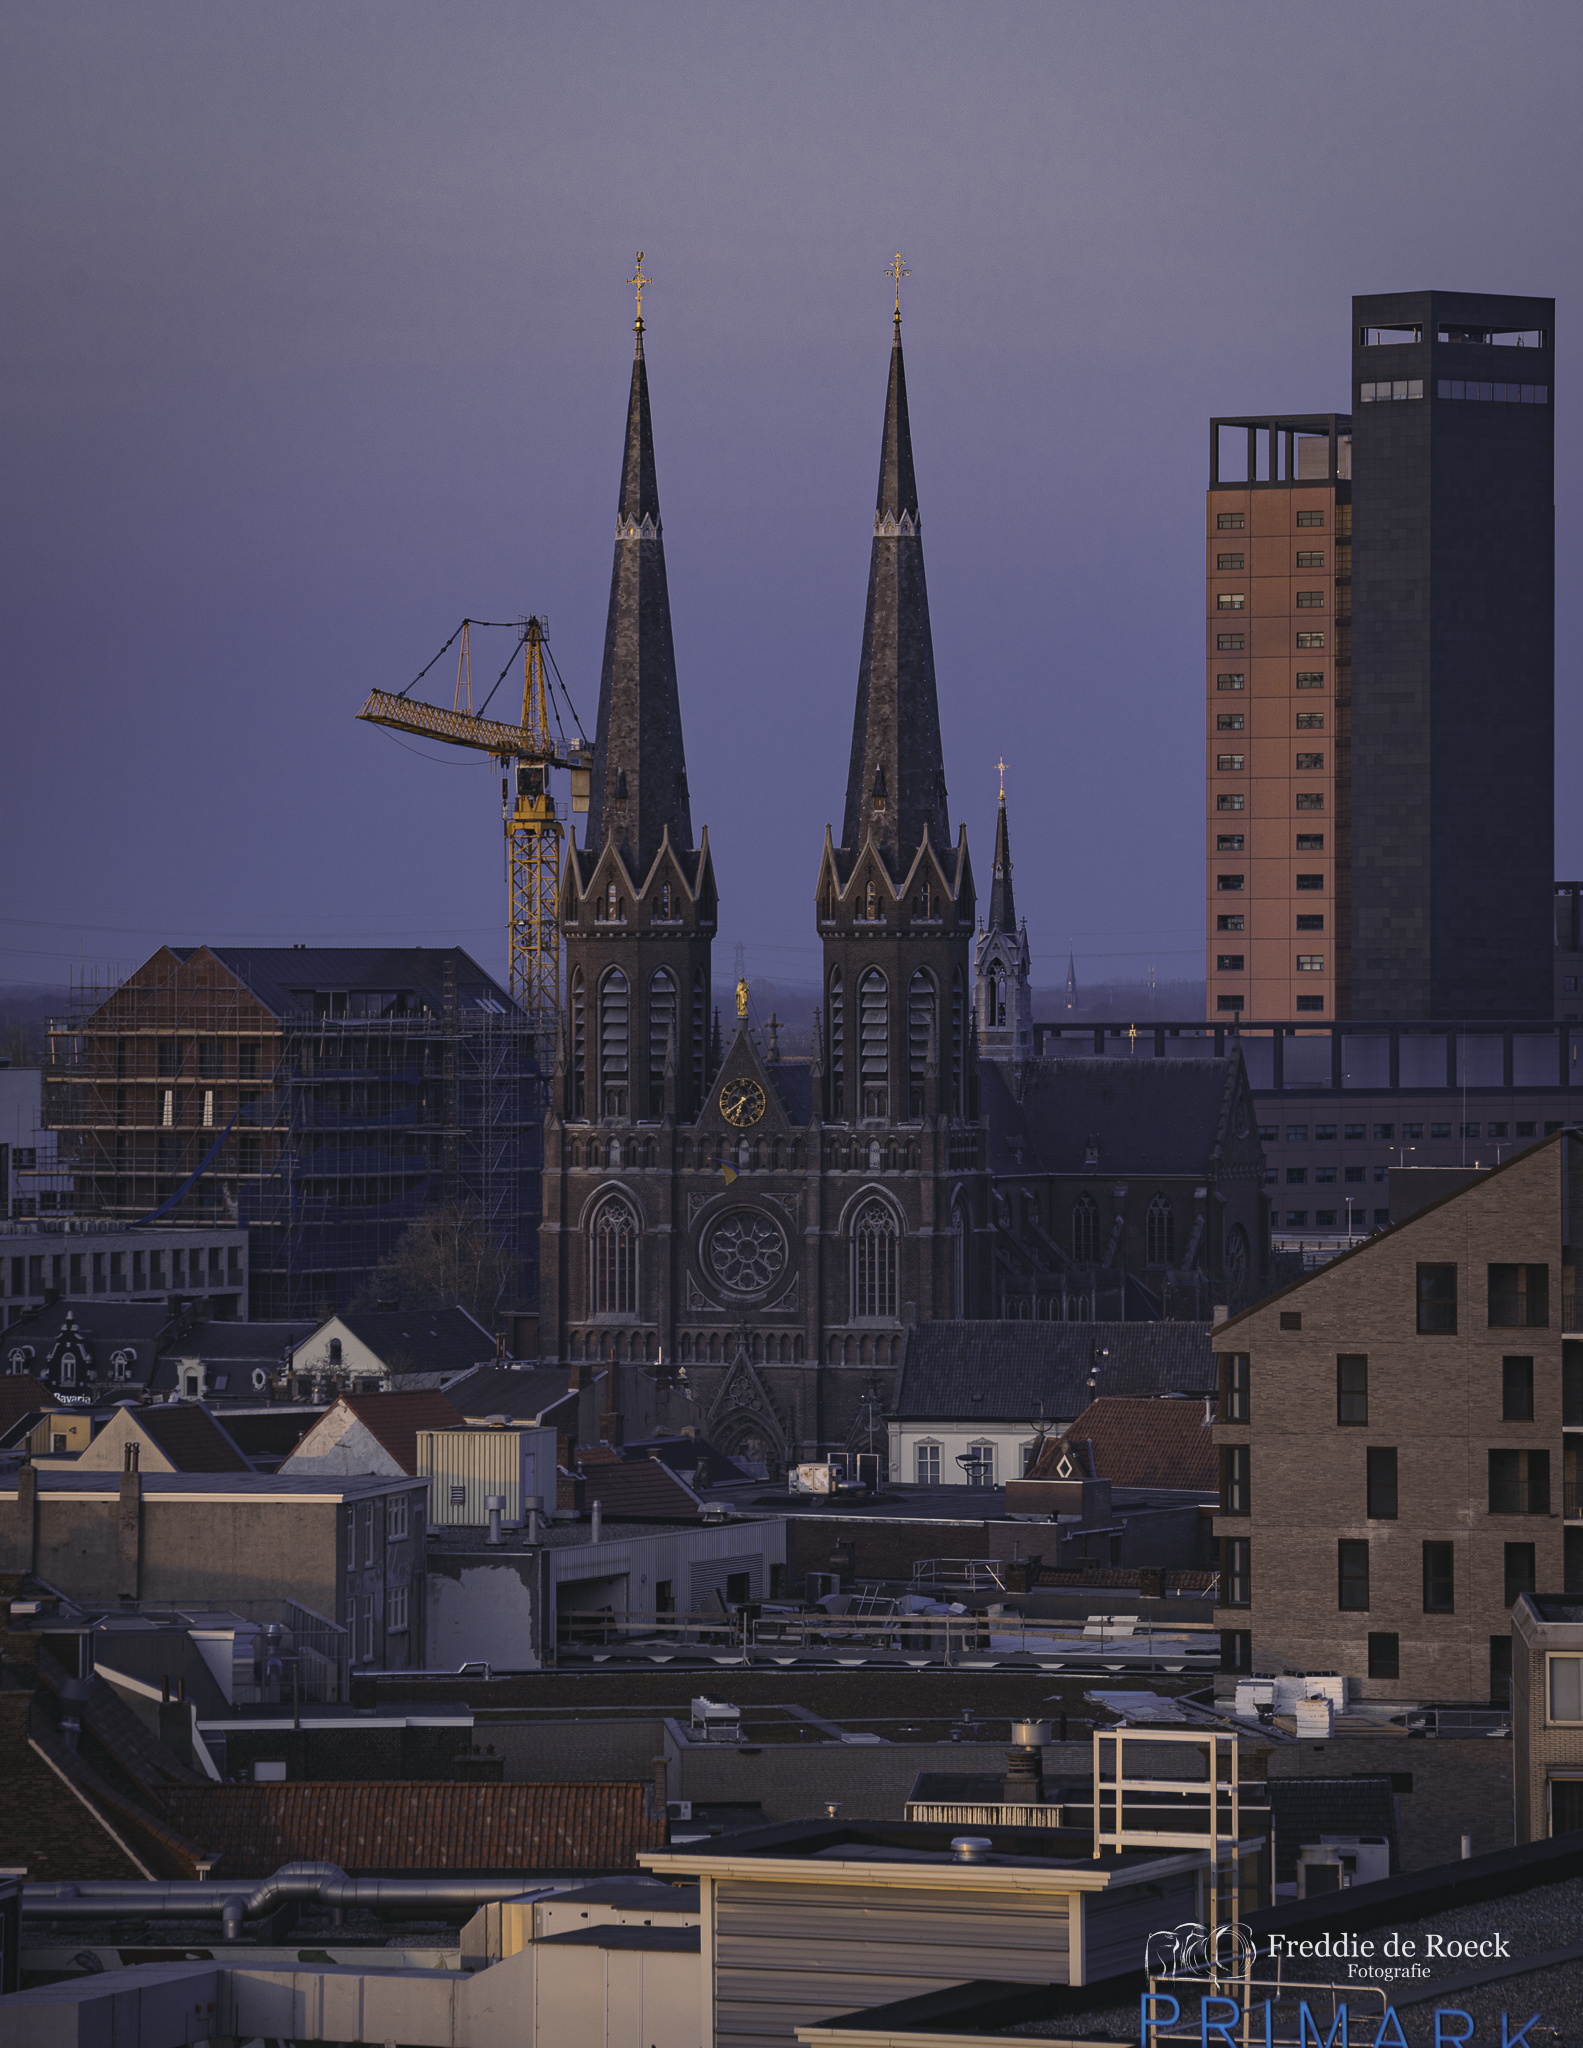 Heikese kerk _ Skyline van Tilburg  _  Foto _ Freddie de Roeck  _  26 maart 2022 _  -16jpg